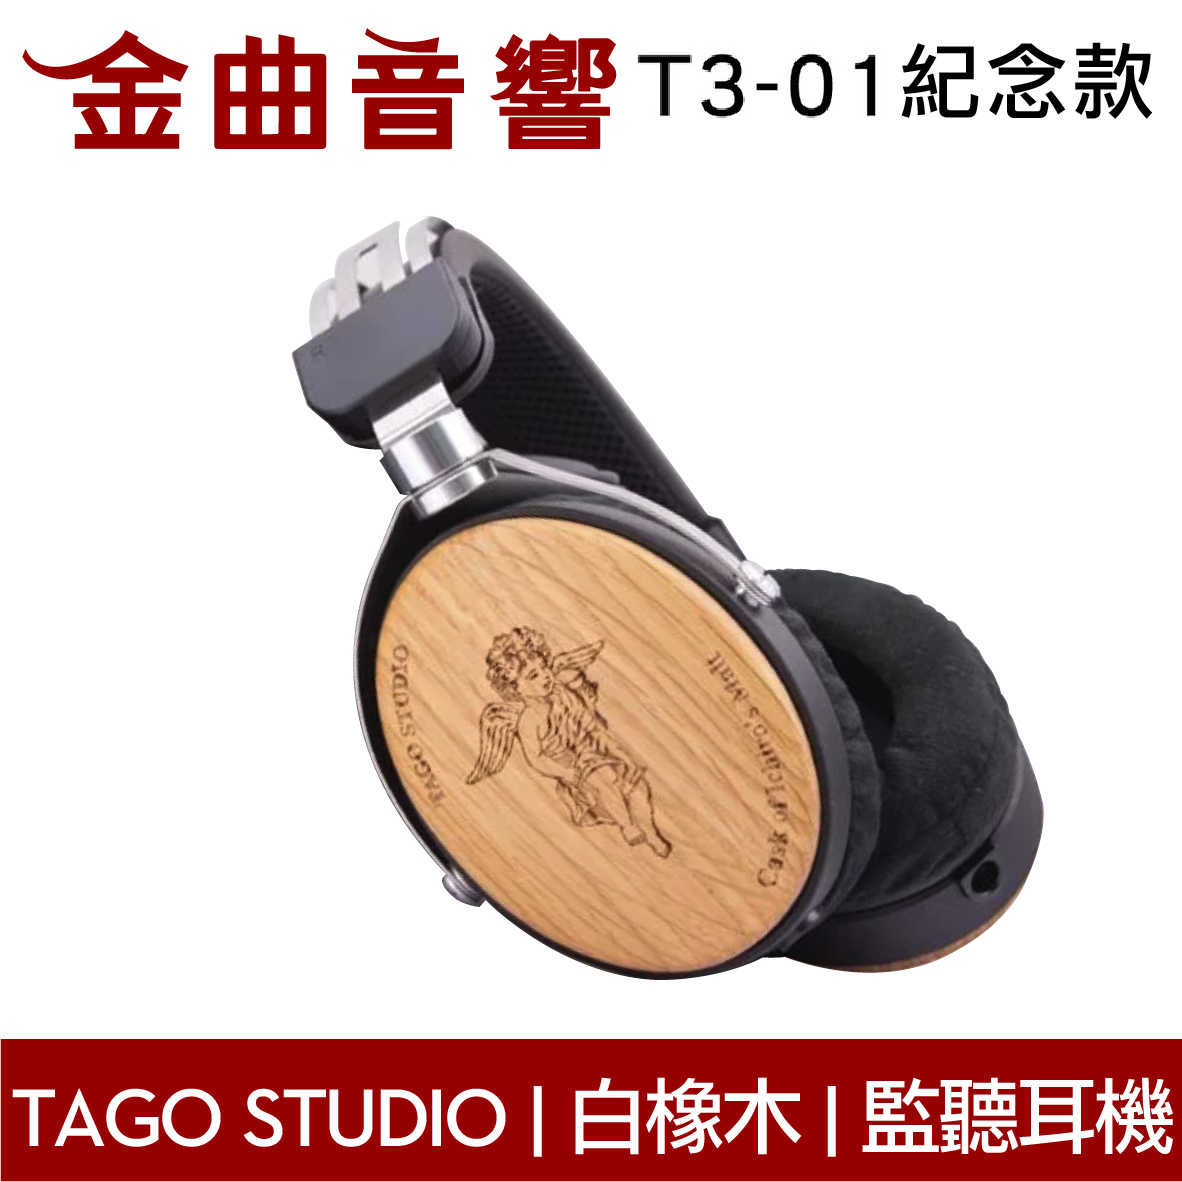 TAGO STUDIO T3-01 タゴスタジオ ヘッドホン - ヘッドフォン